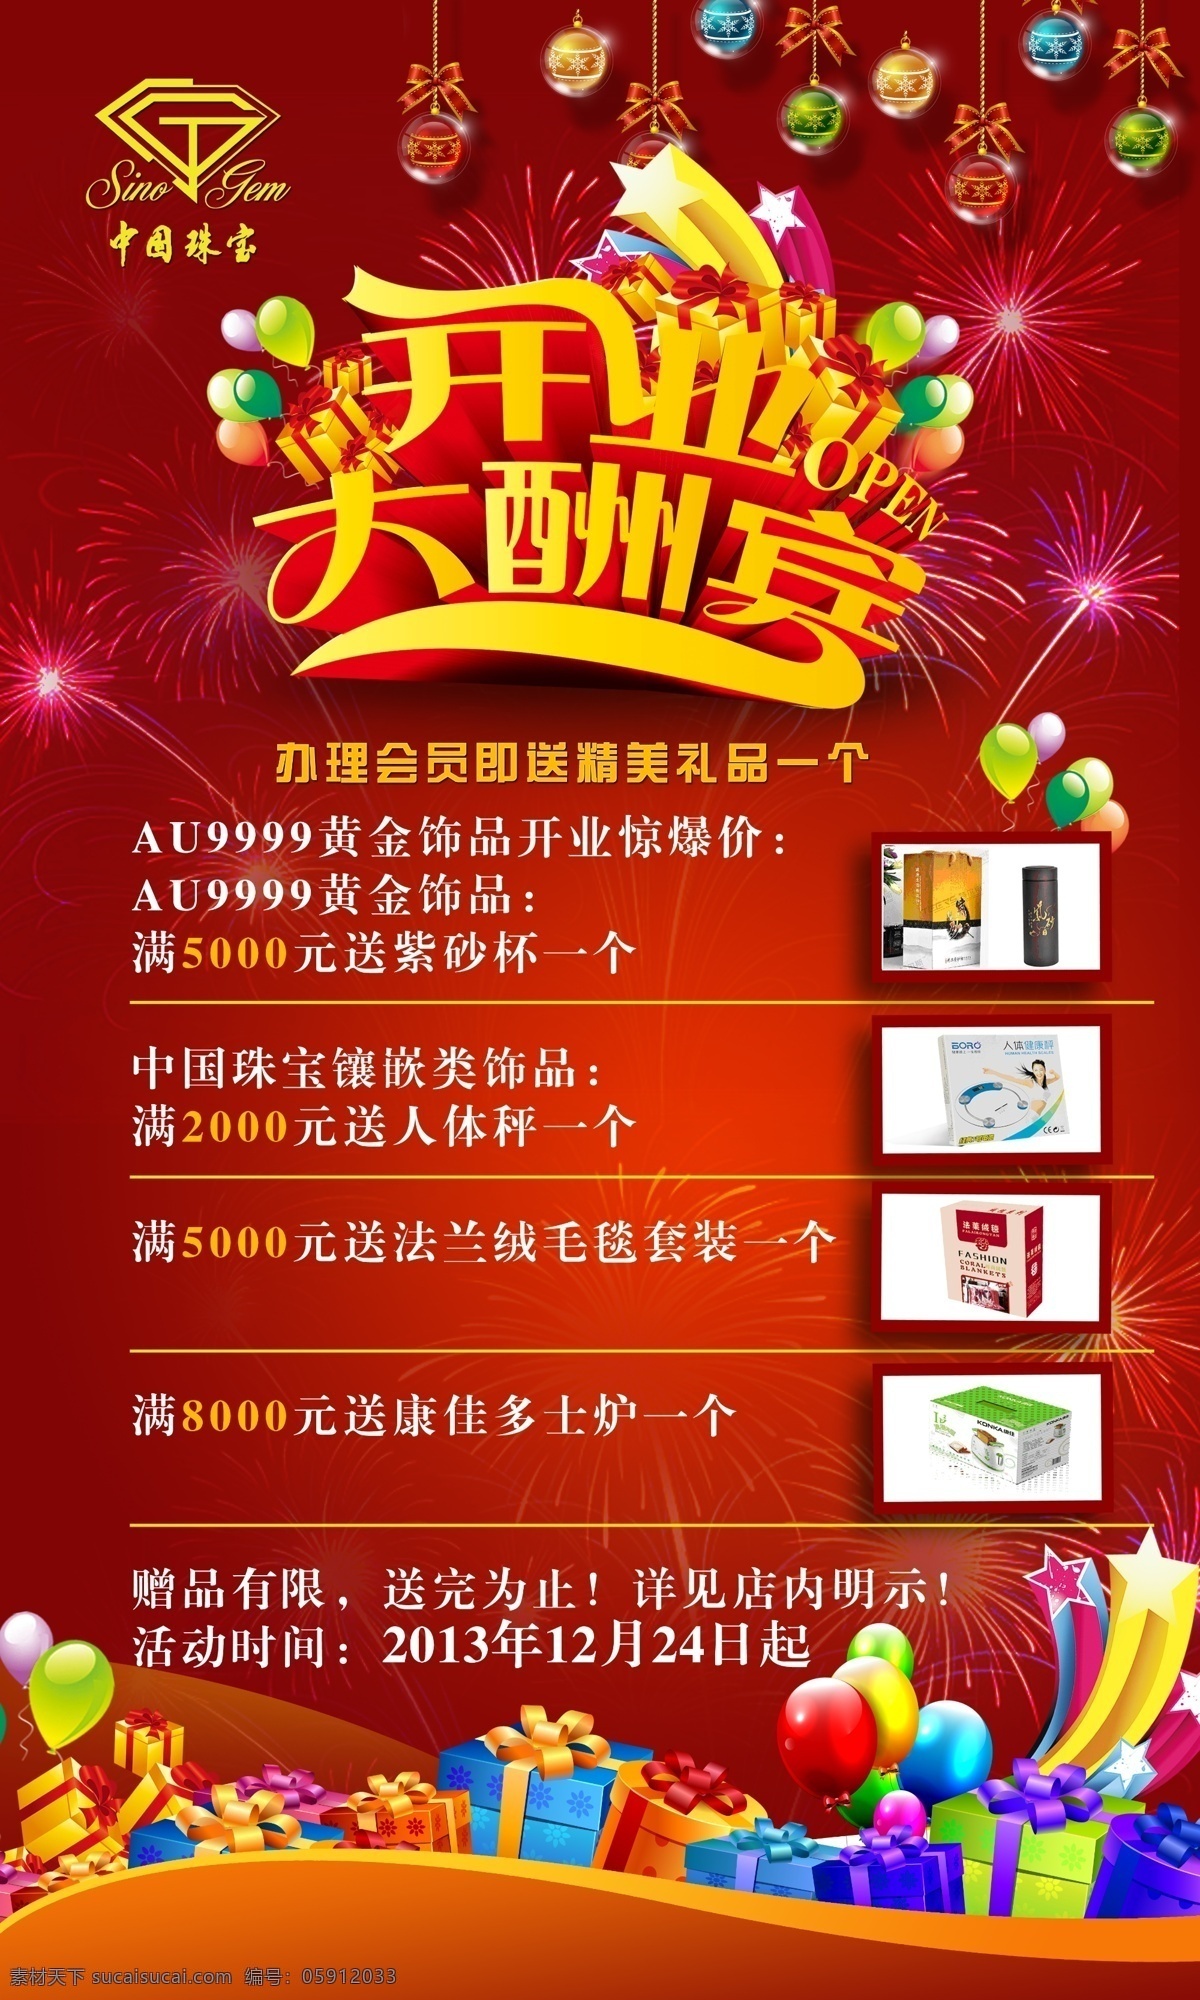 开业庆典 中国珠宝 礼品 红色 气球礼花 庆典海报 广告设计模板 源文件